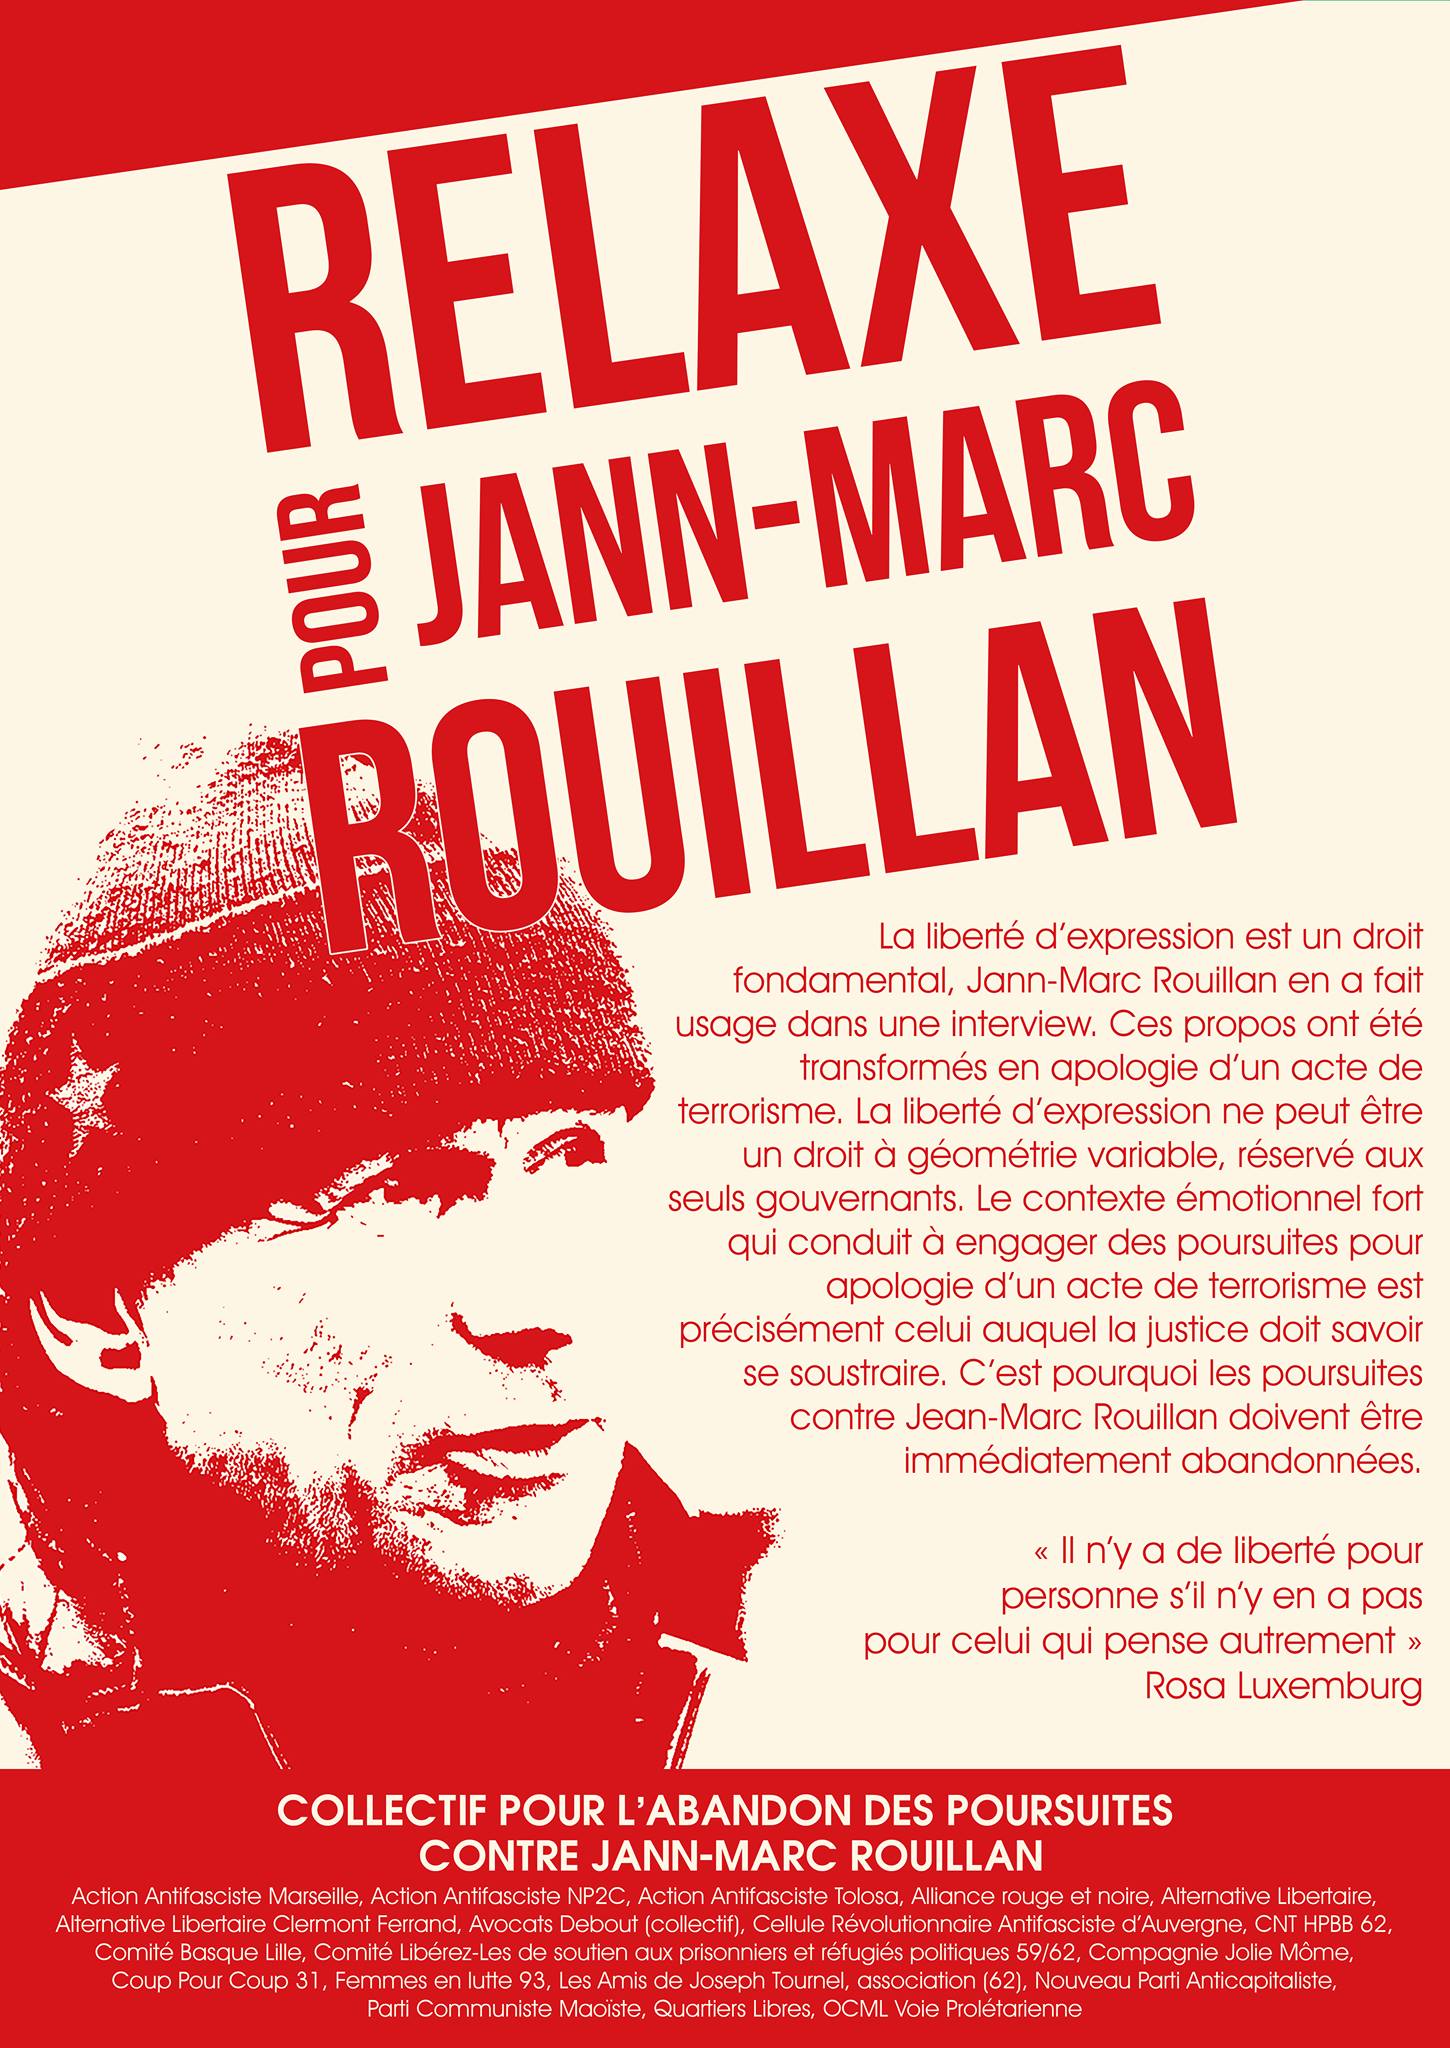 Procès en appel de Jean-Marc Rouillan le 18 avril 2017 à Paris